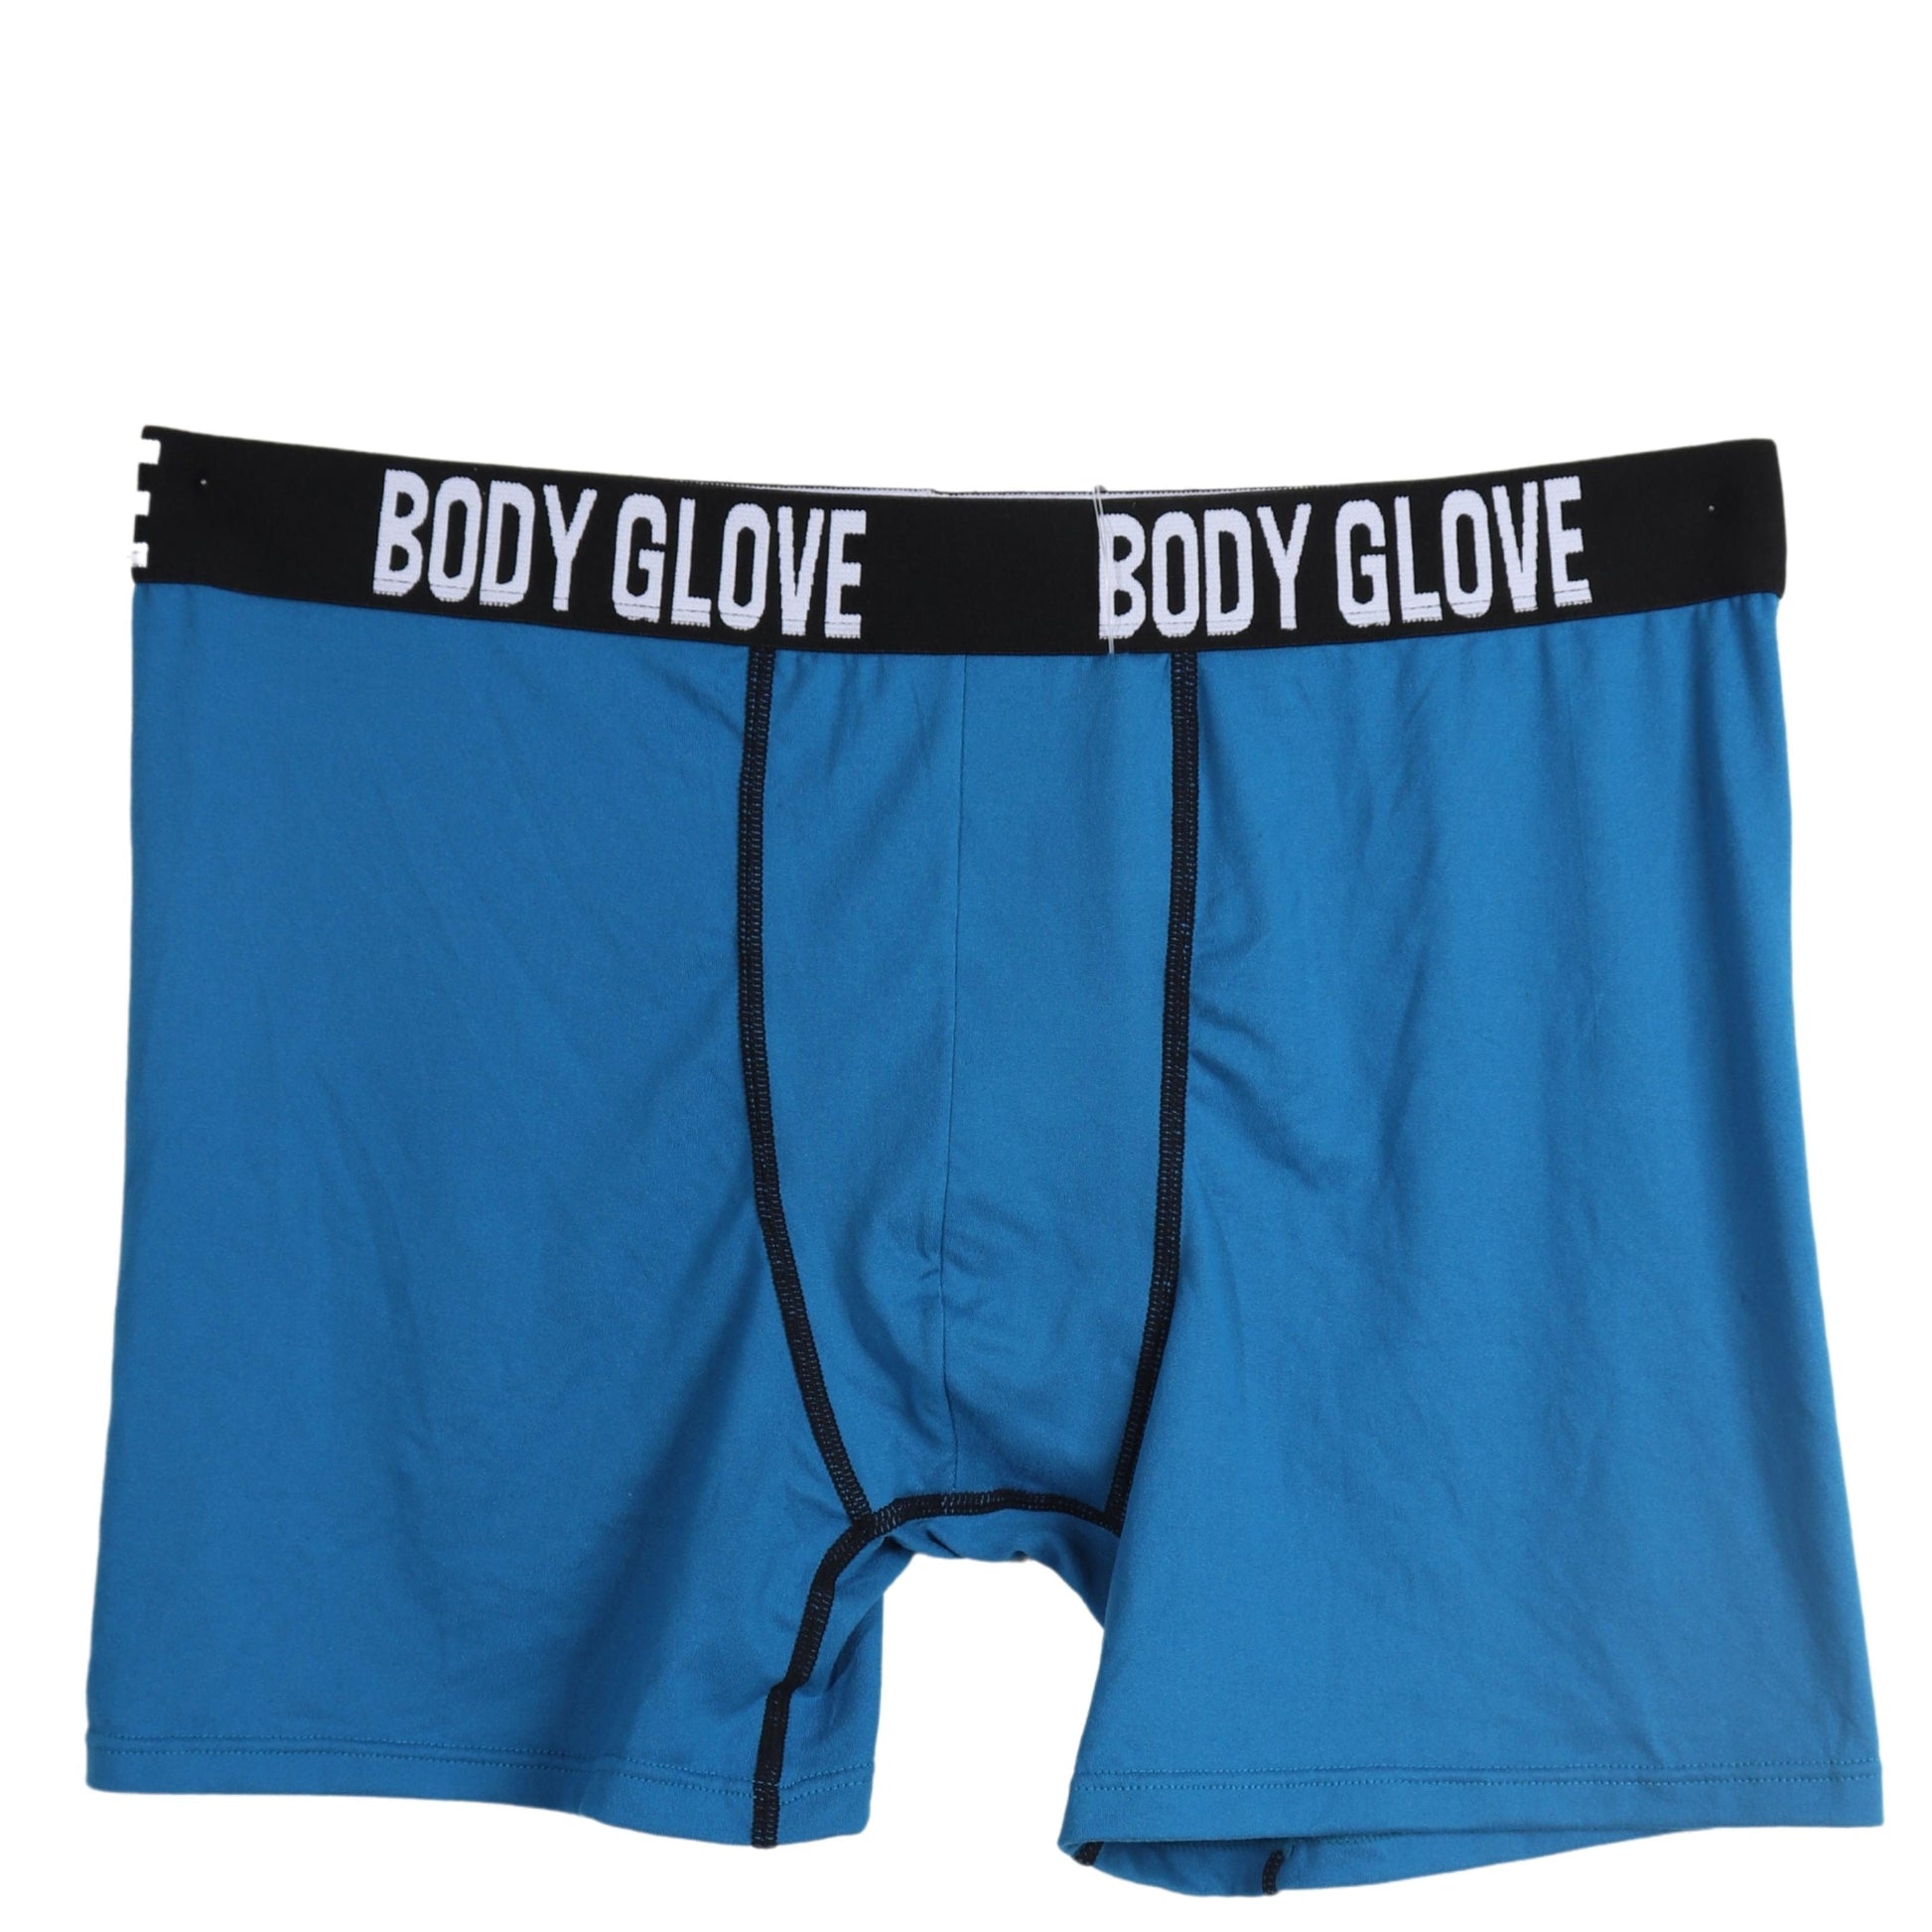 BODY GLOVE Mens Underwear XL / Blue BODY GLOVE - Comfortable Boxer